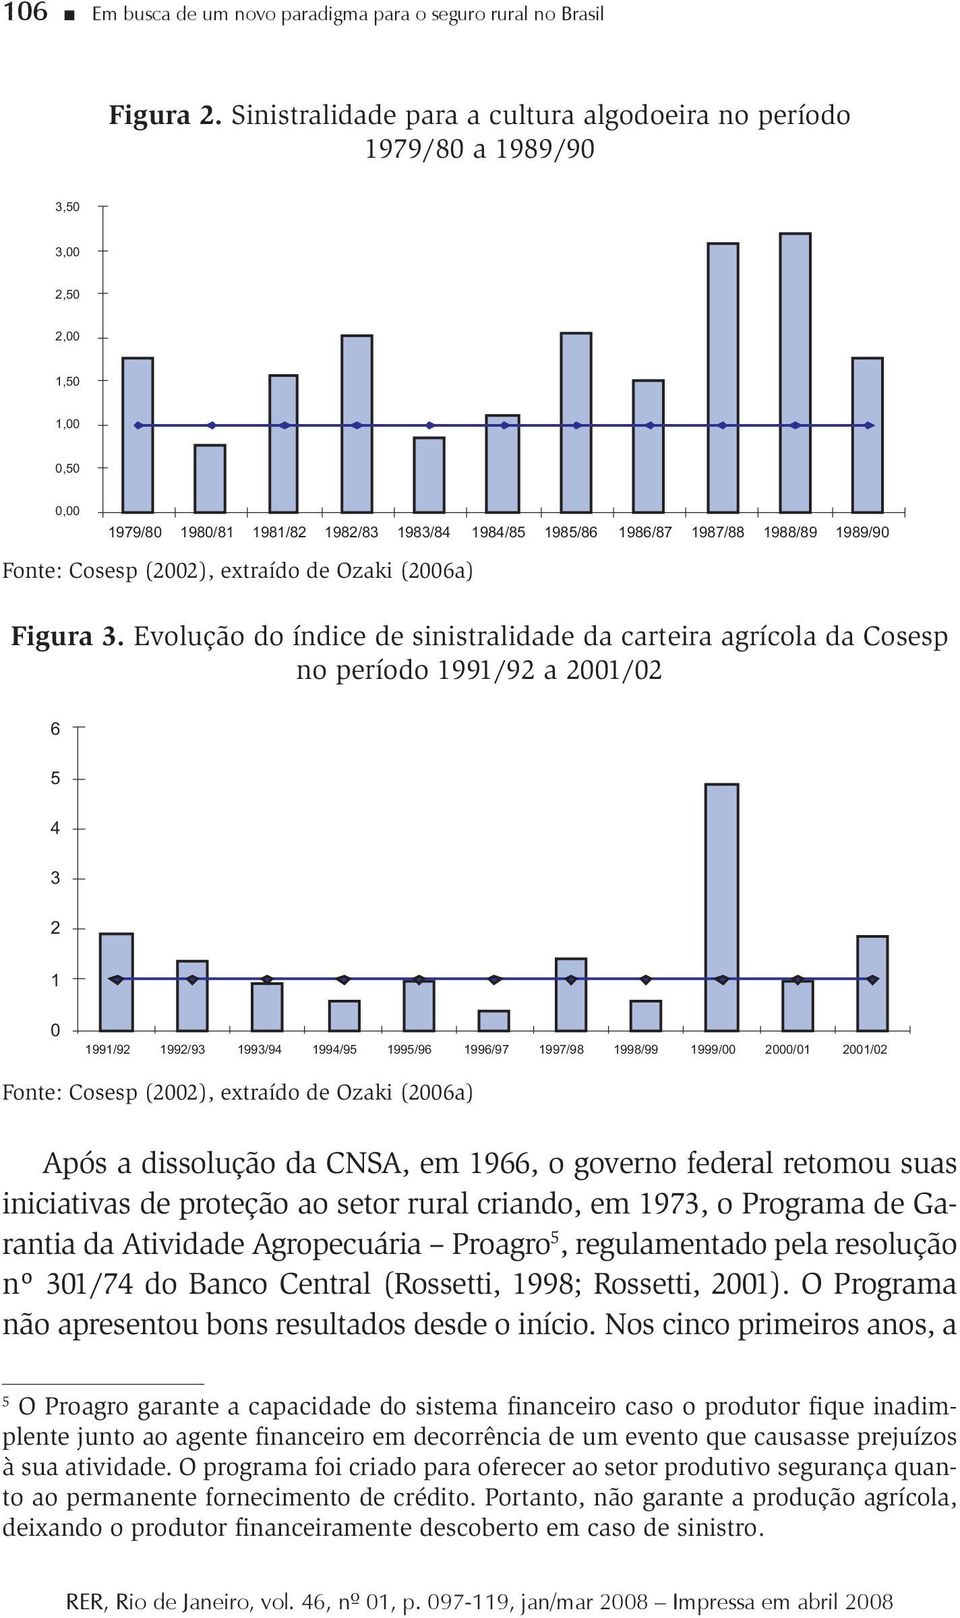 iniciativas de proteção ao setor rural criando, em 973, o Programa de Garantia da Atividade Agropecuária Proagro 5, regulamentado pela resolução nº 3/74 do Banco Central (Rossetti, 998; Rossetti, ).